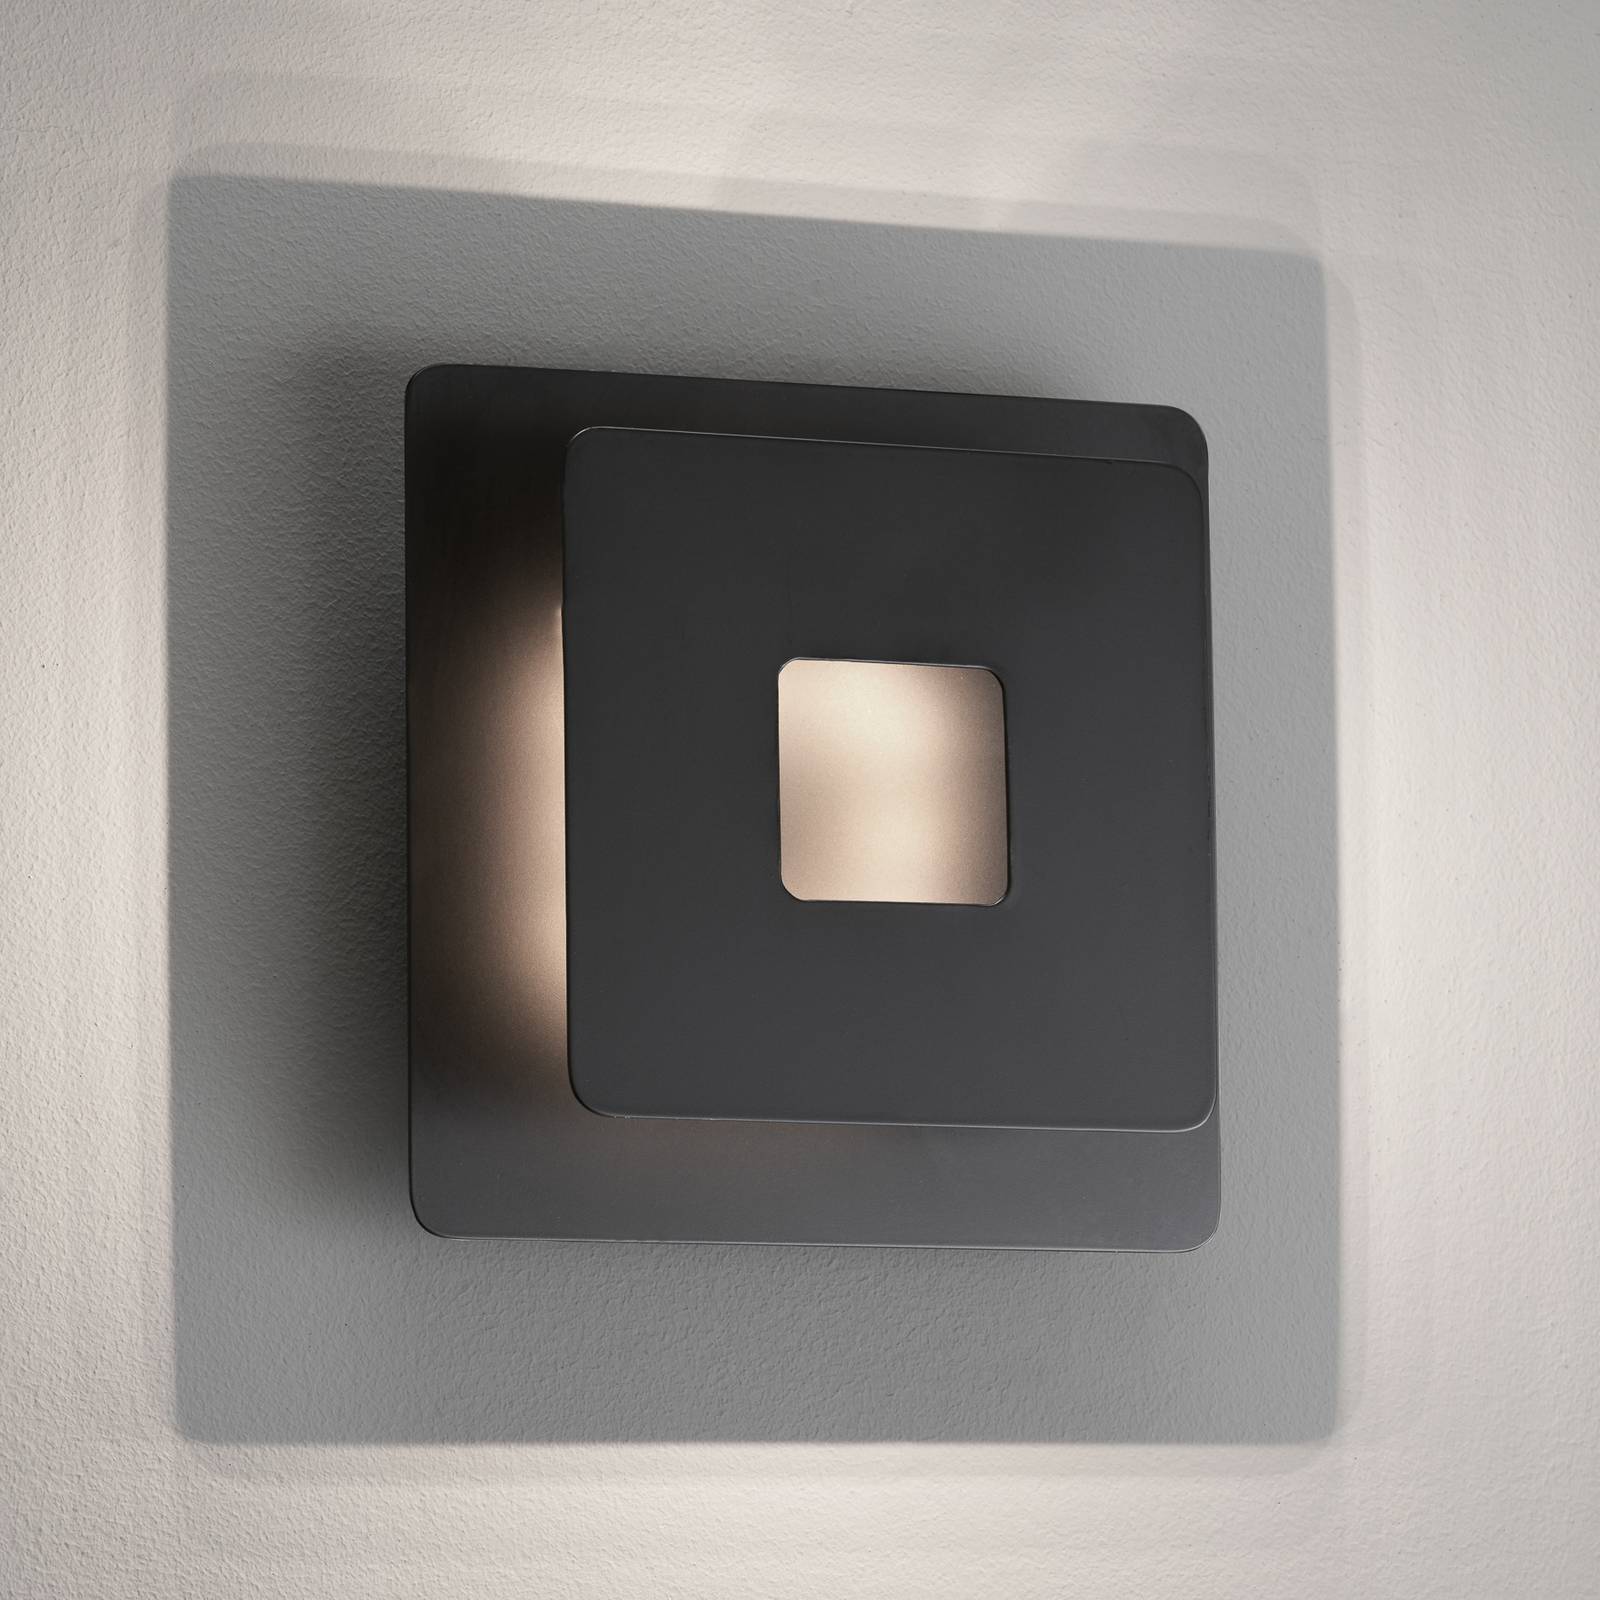 FISCHER & HONSEL LED nástěnné světlo Hennes, 18x18cm, černá